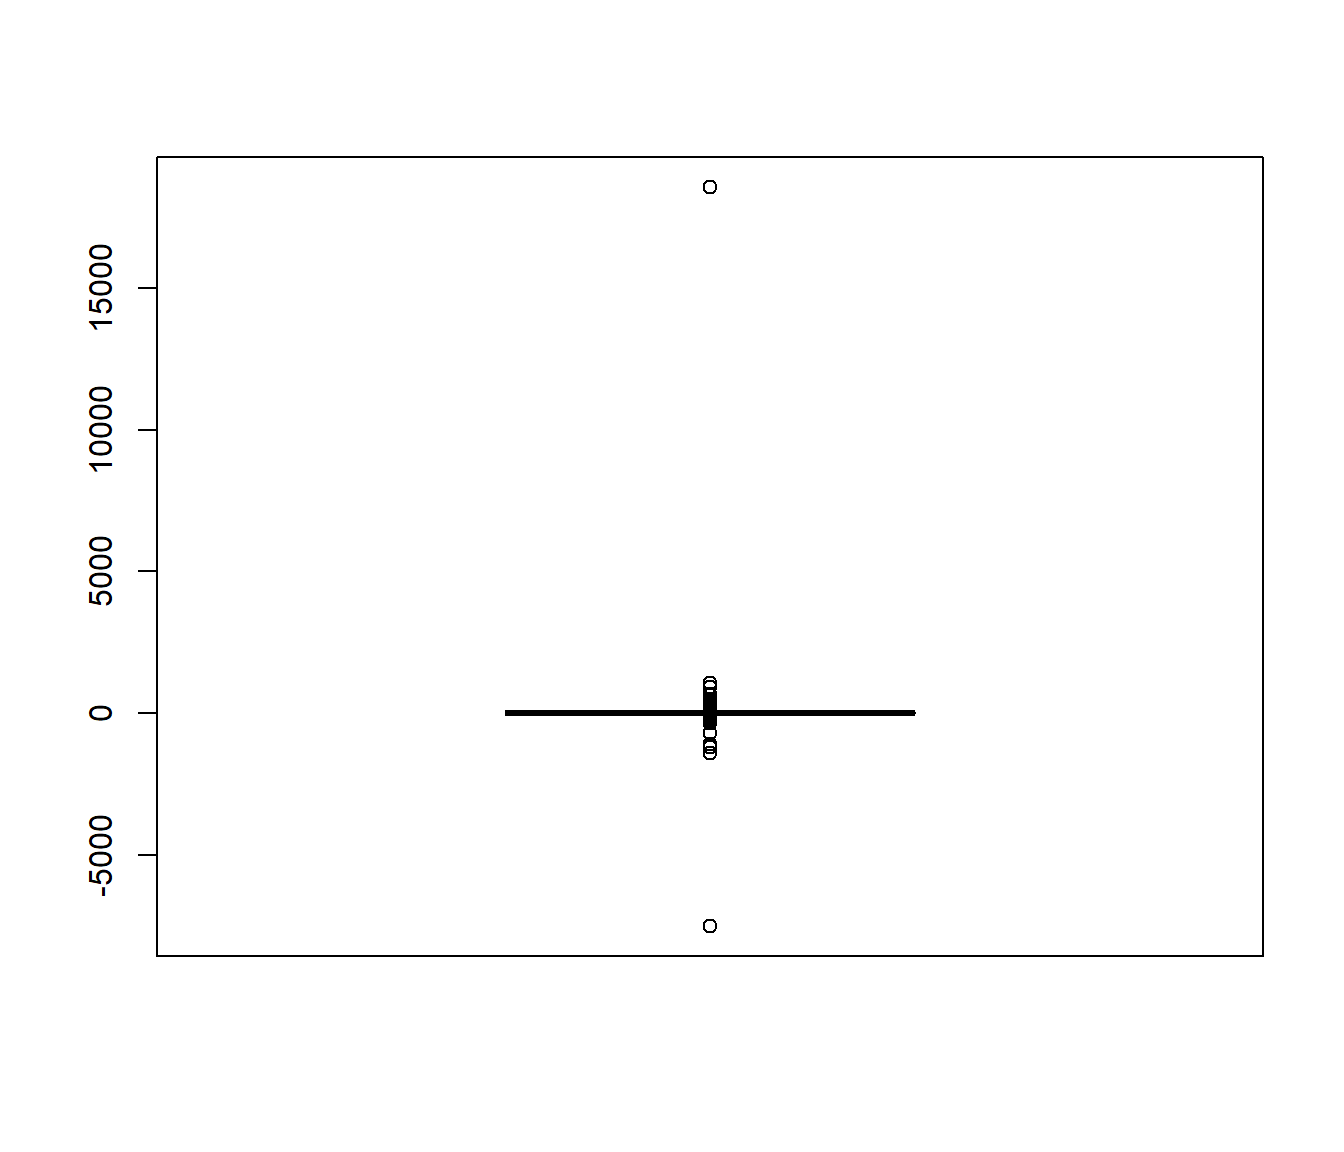 Gráfico de cajas de 10000 generaciones de una distribución de Cauchy.